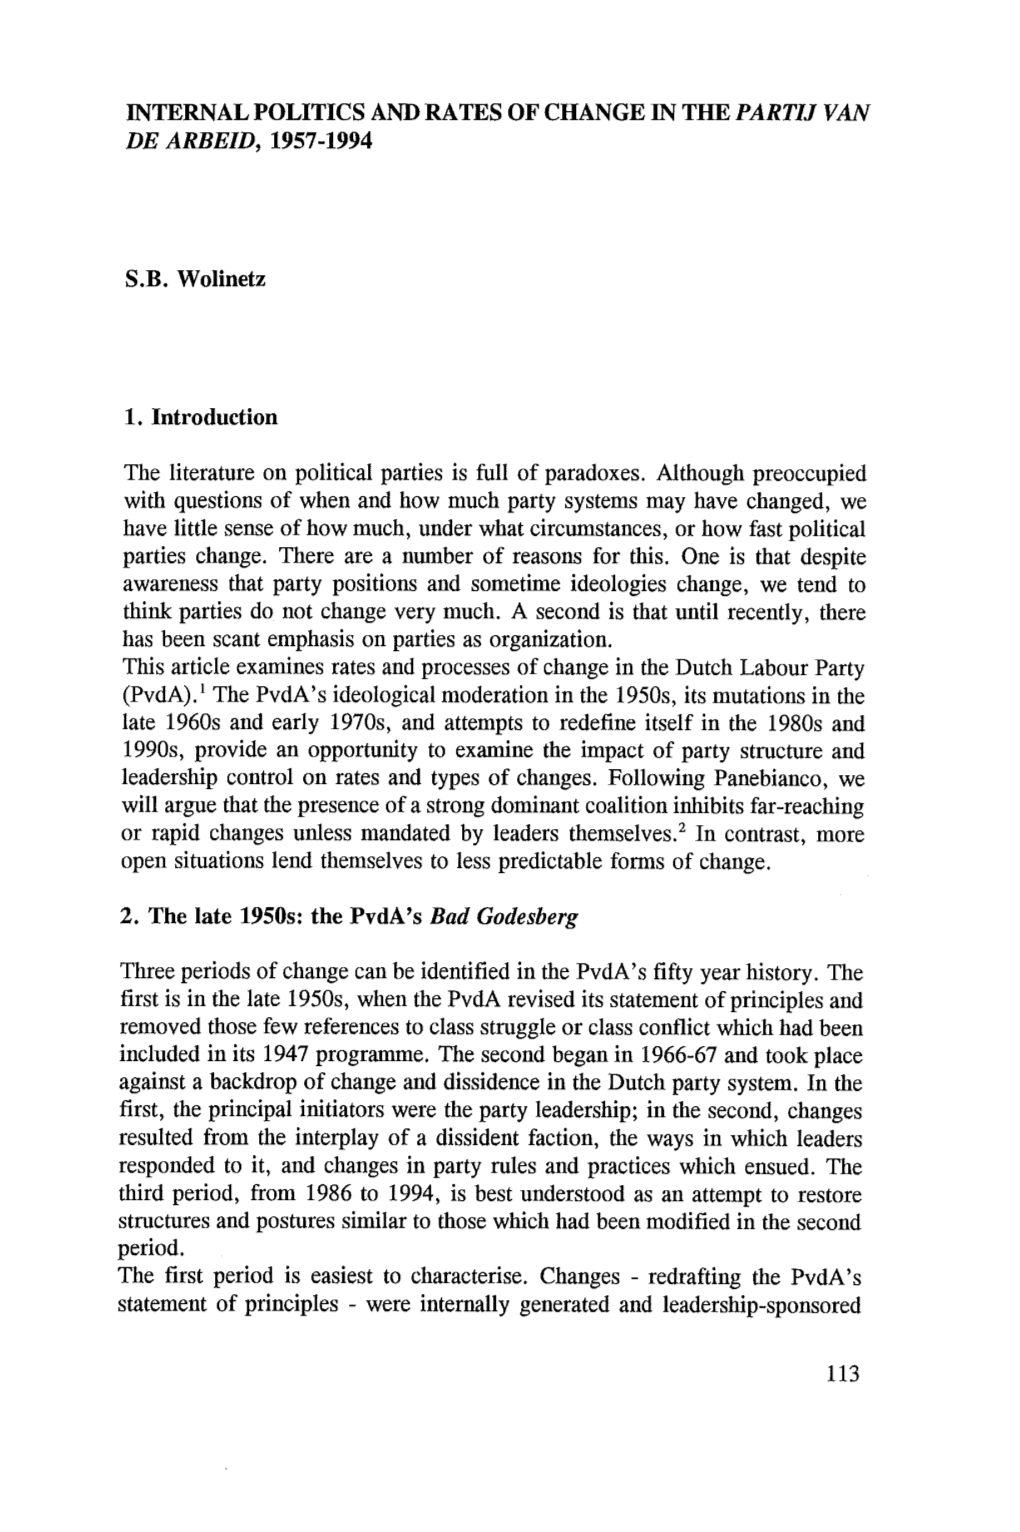 Internal Politics and Rates of Change in the Partij Van De Arbeid, 1957-1994